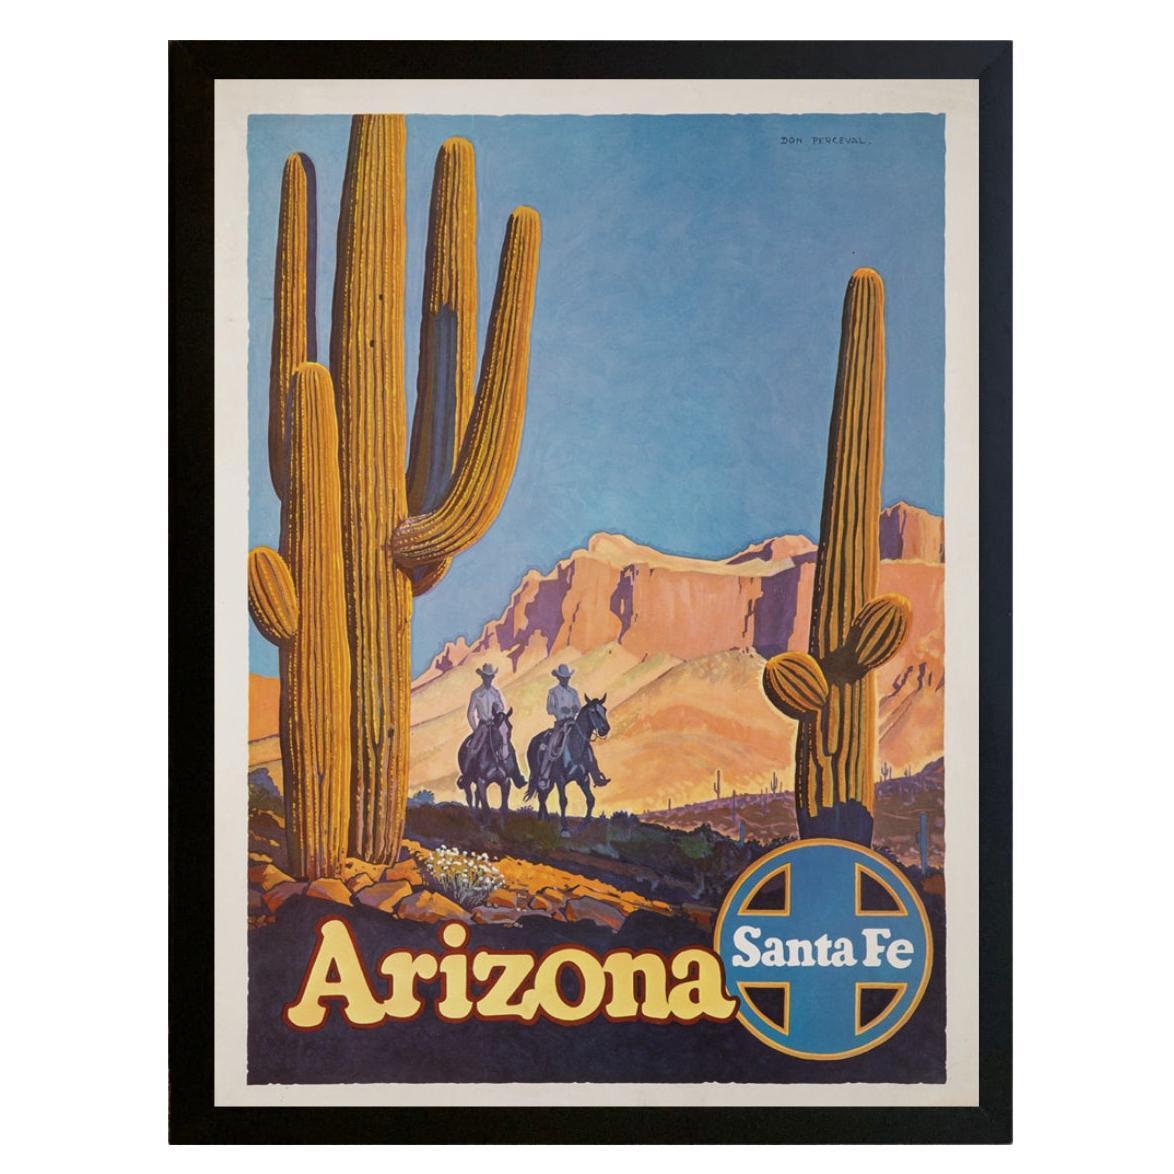 "Arizona" Affiche de voyage vintage du chemin de fer Santa Fe par Don Perceval, circa 1940s